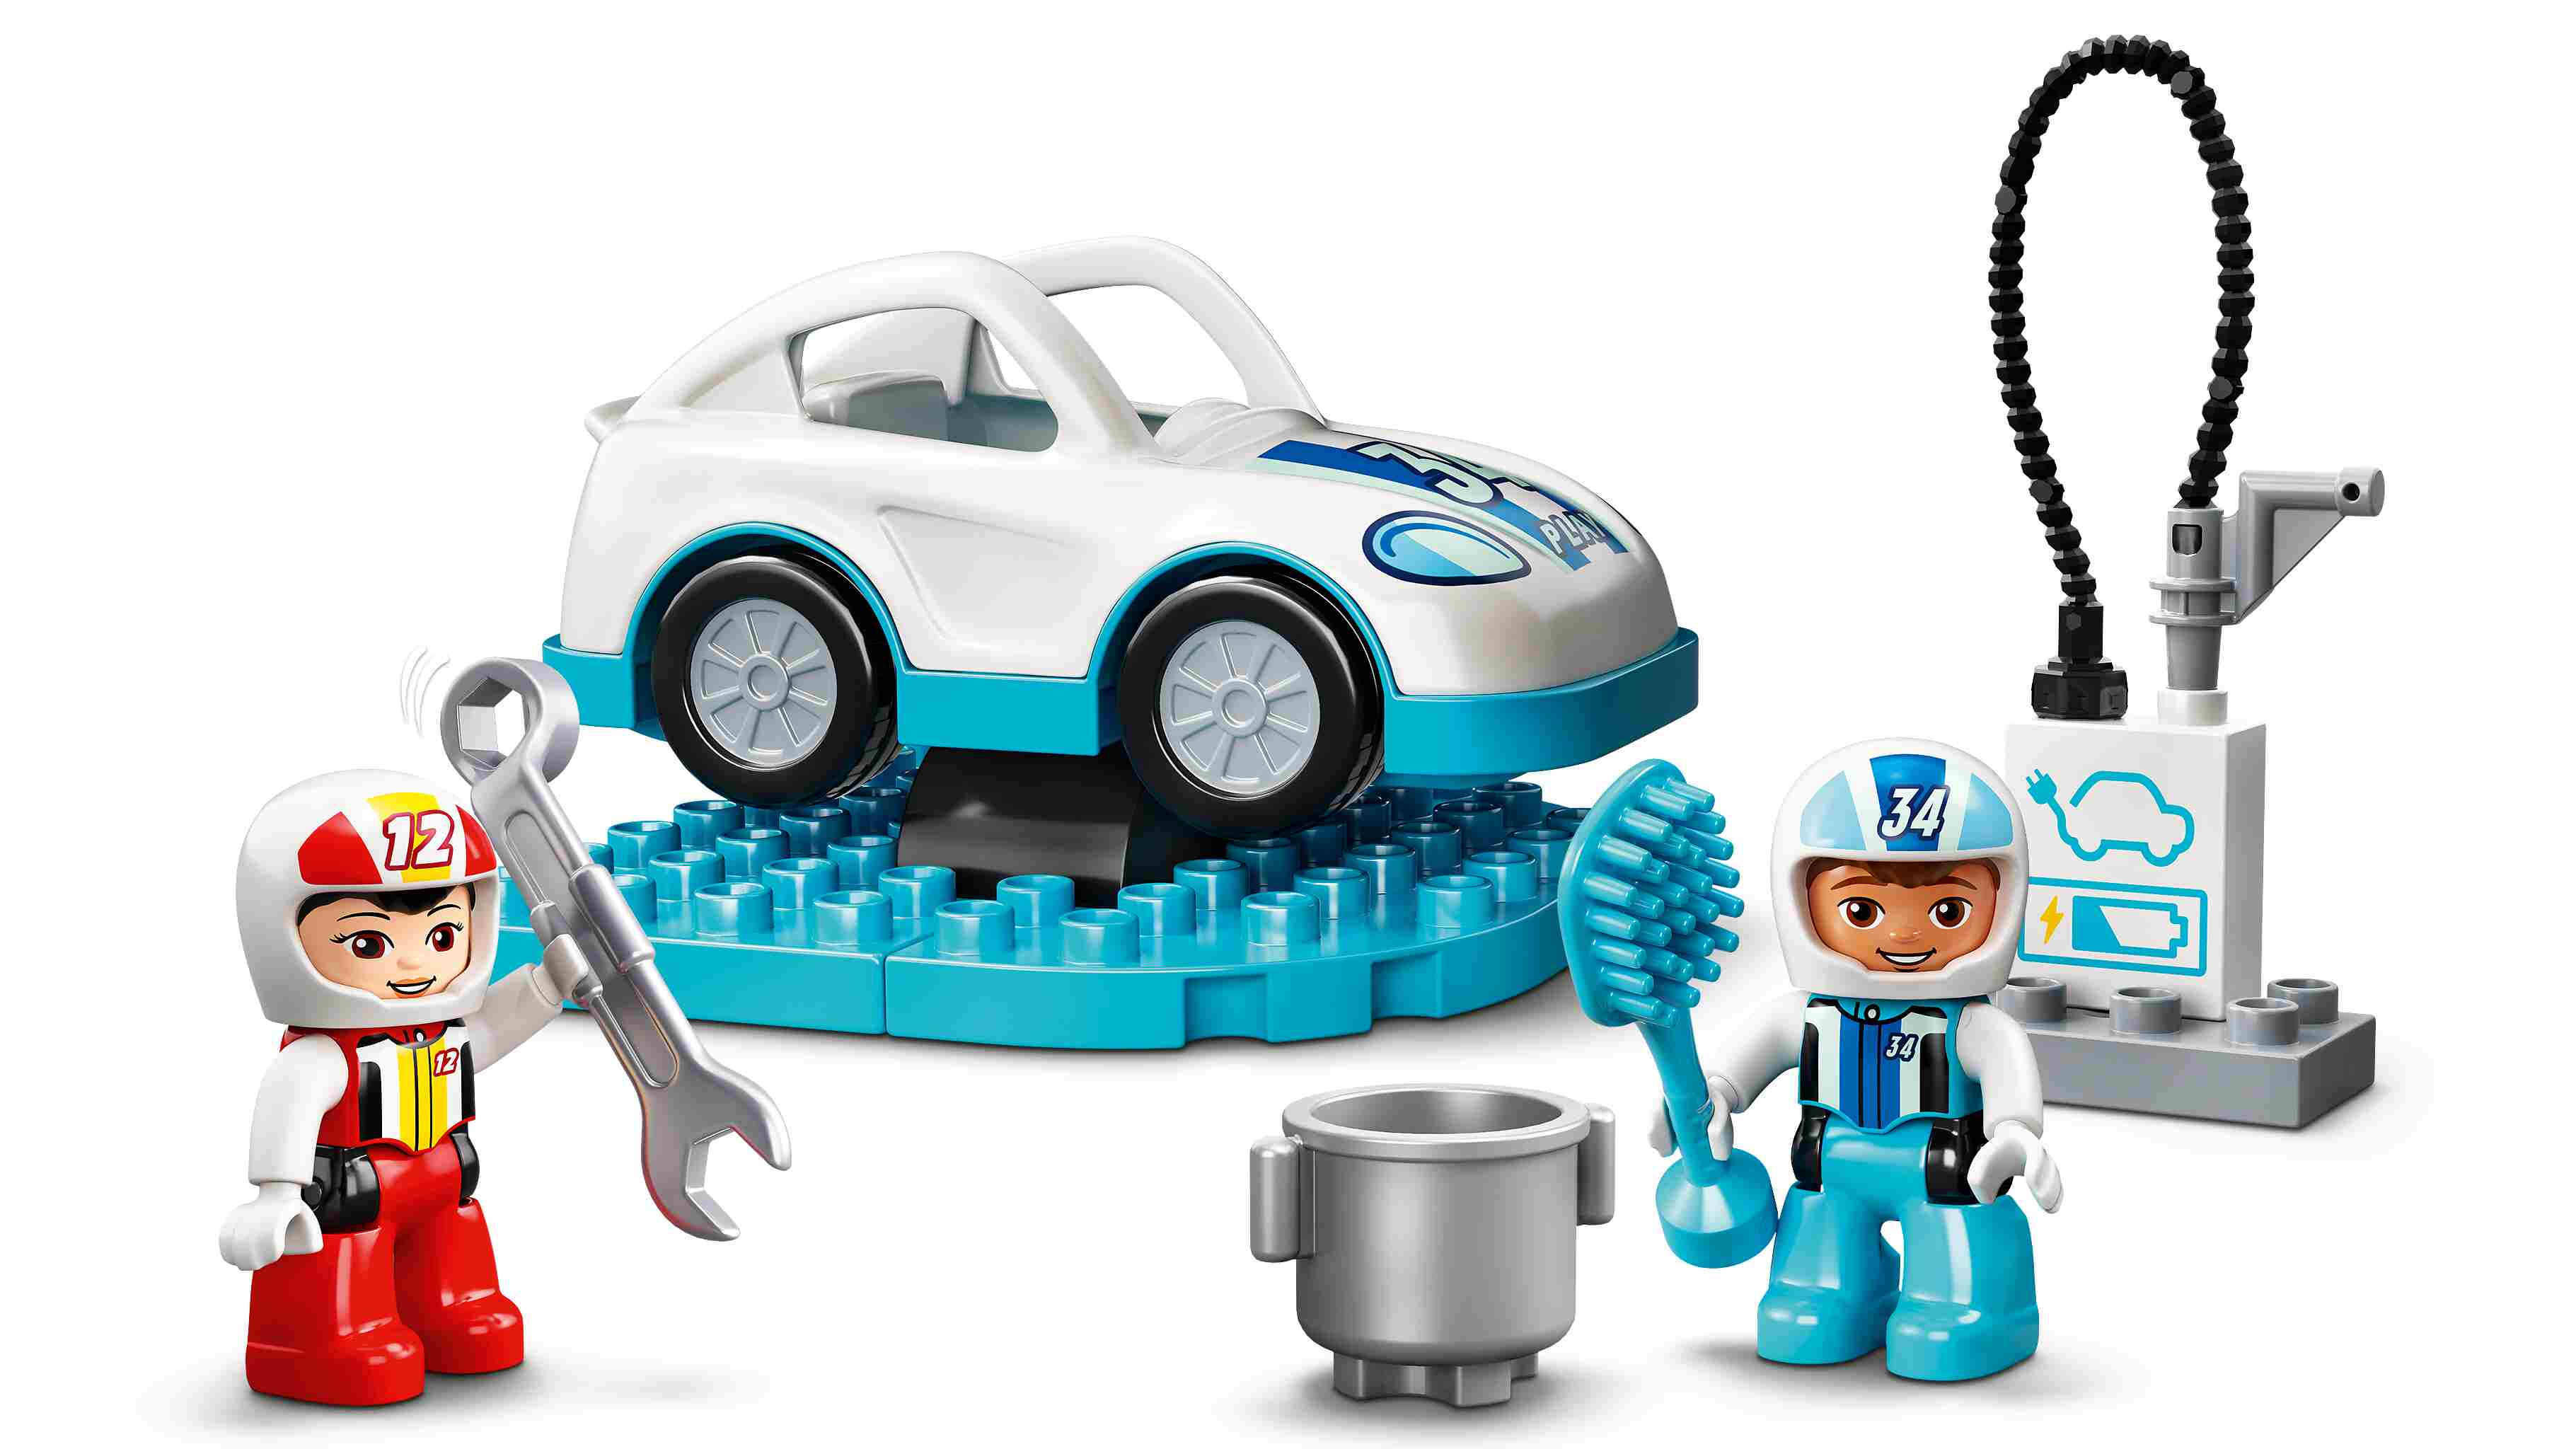 LEGO 10947 DUPLO Rennwagen Spielzeugautos, Kleinkinder Spielzeug, ab 2 Jahre